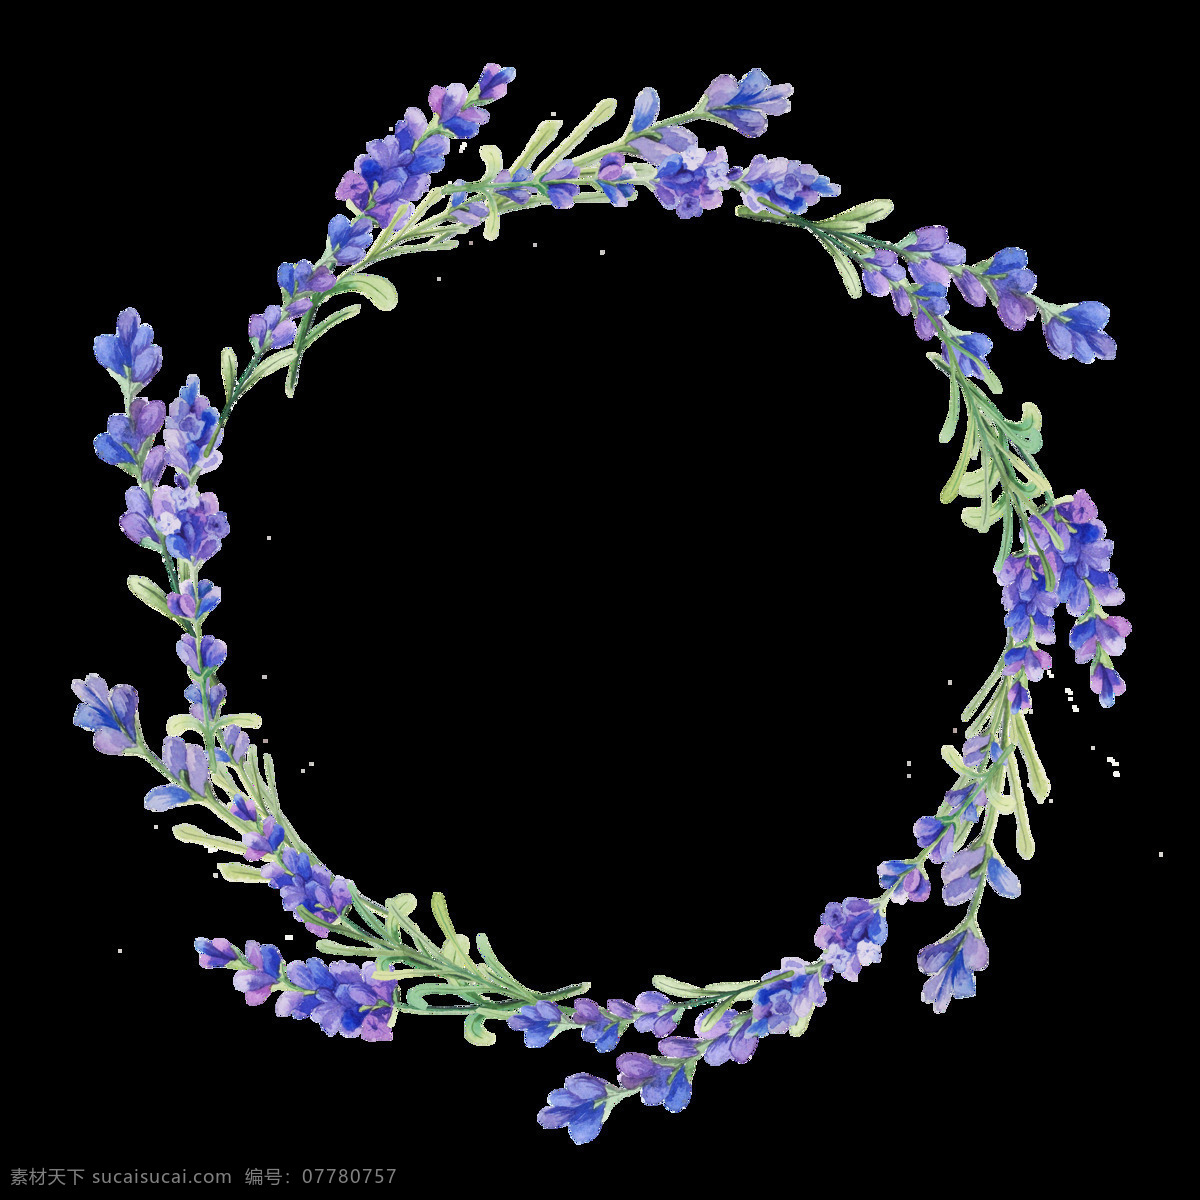 紫色 优雅 紫罗兰 卡通 水彩 透明 抠图专用 装饰 设计素材